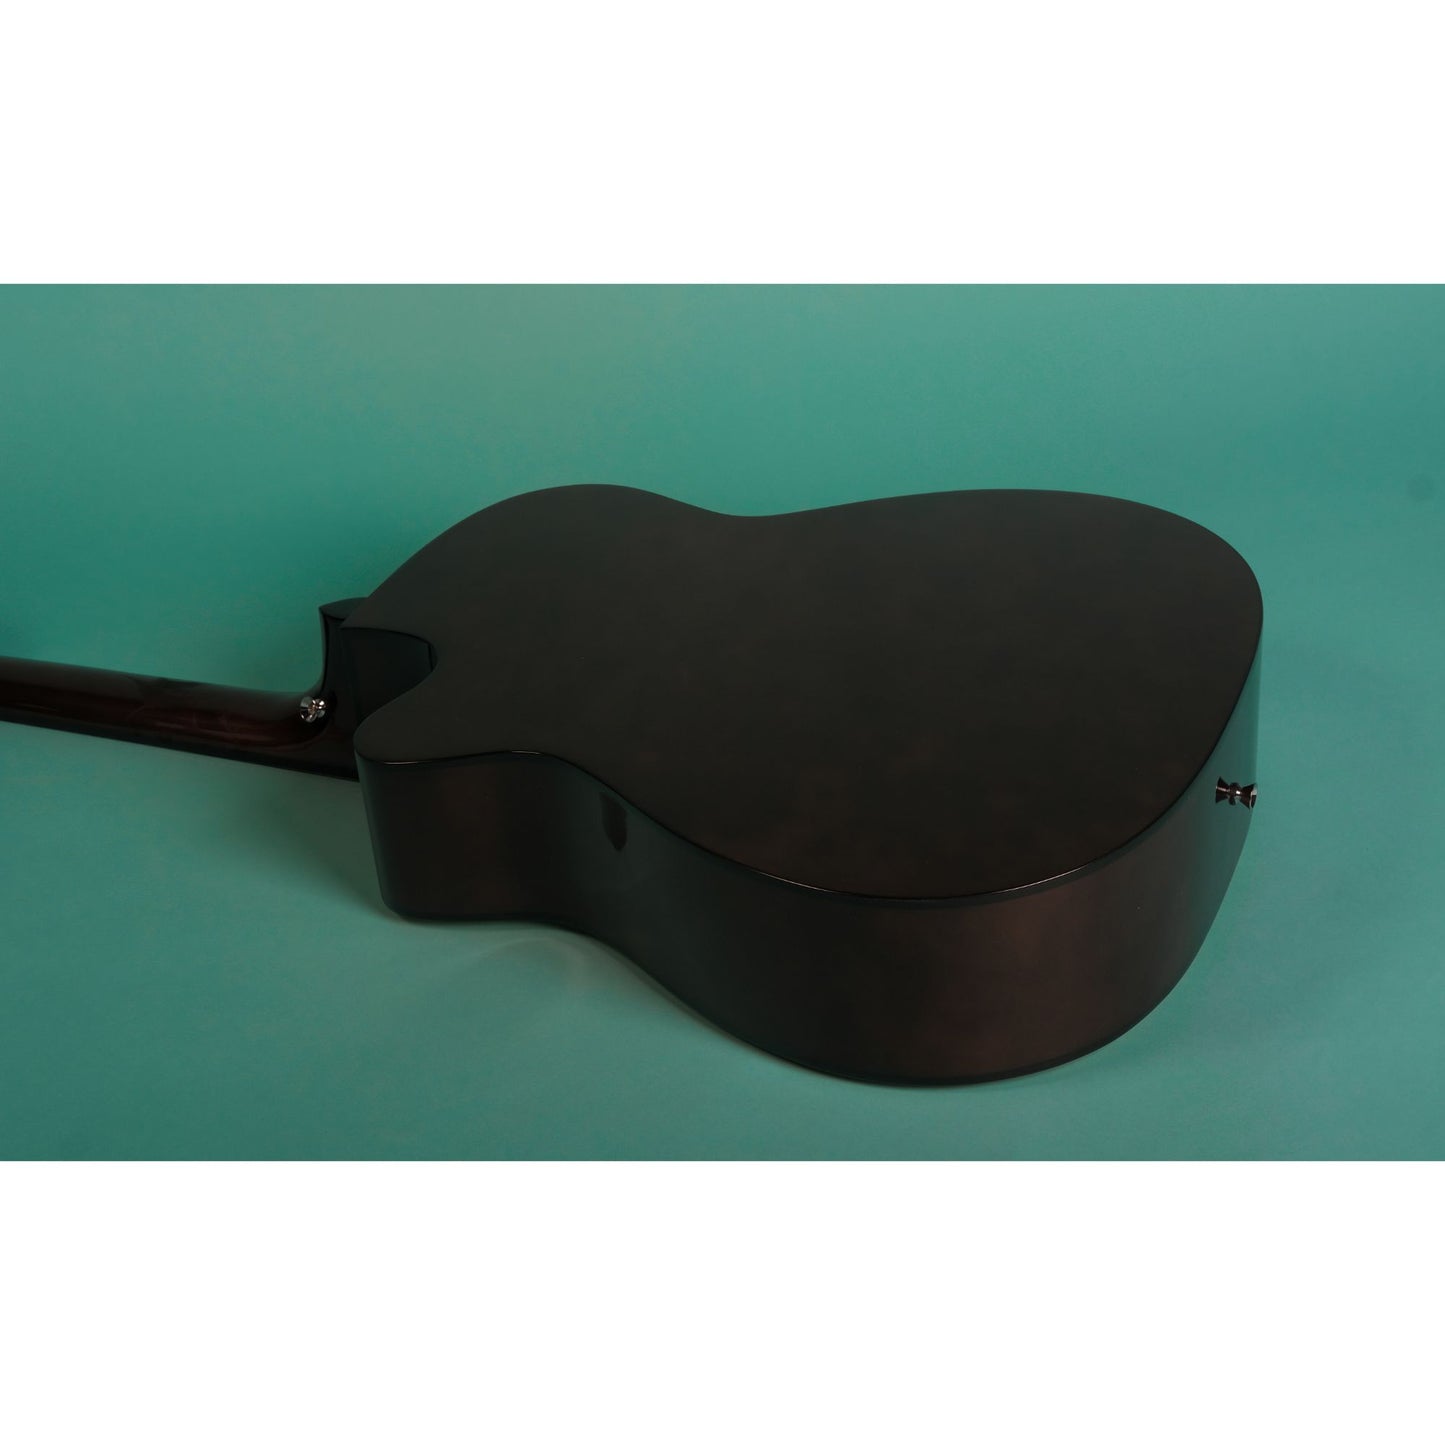 Mantic X310AC Acoustic Guitar - Natural